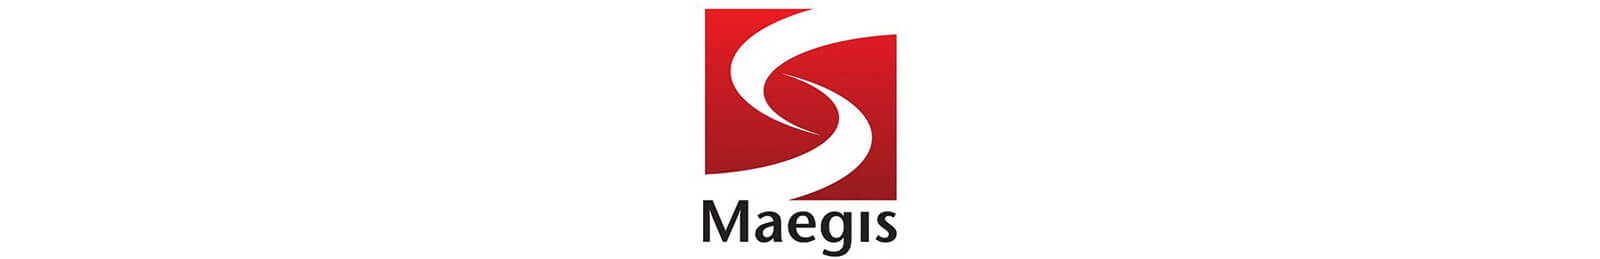 Maegis